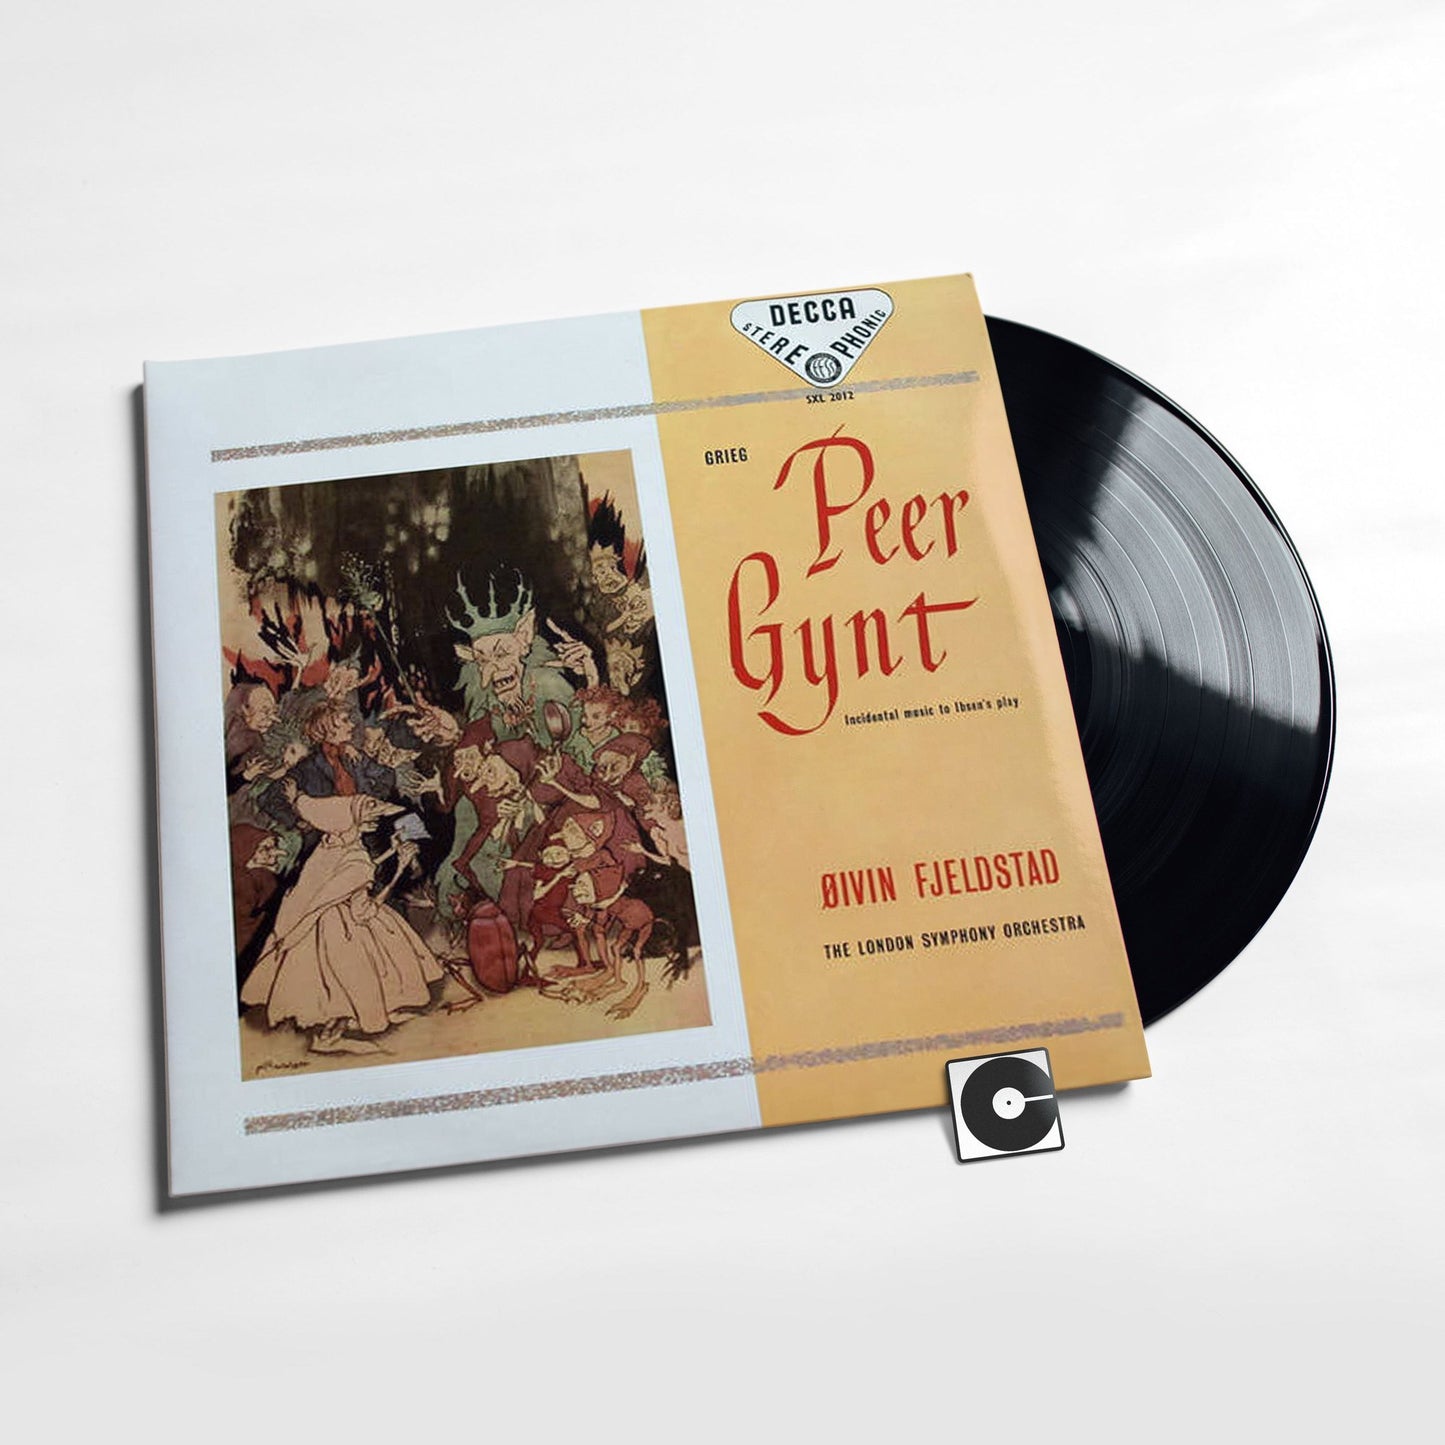 Grieg - "Peer Gynt" Speakers Corner